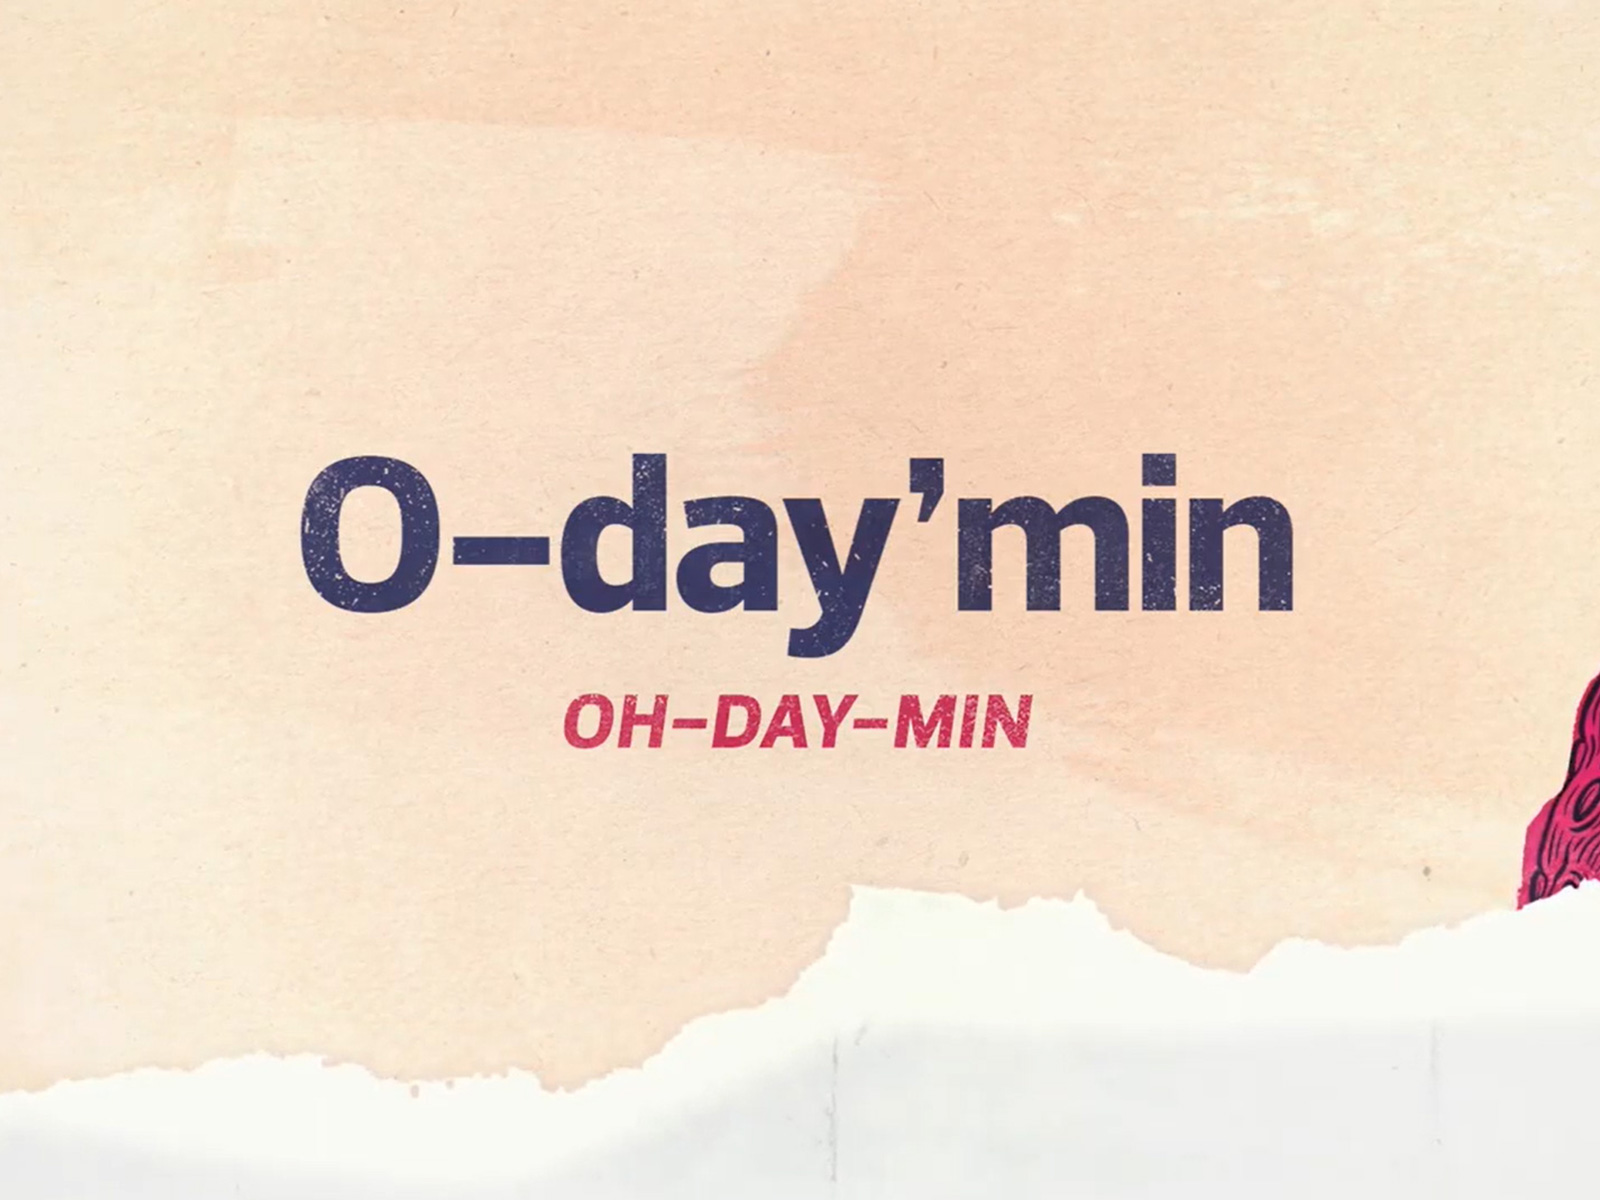 O-day’min